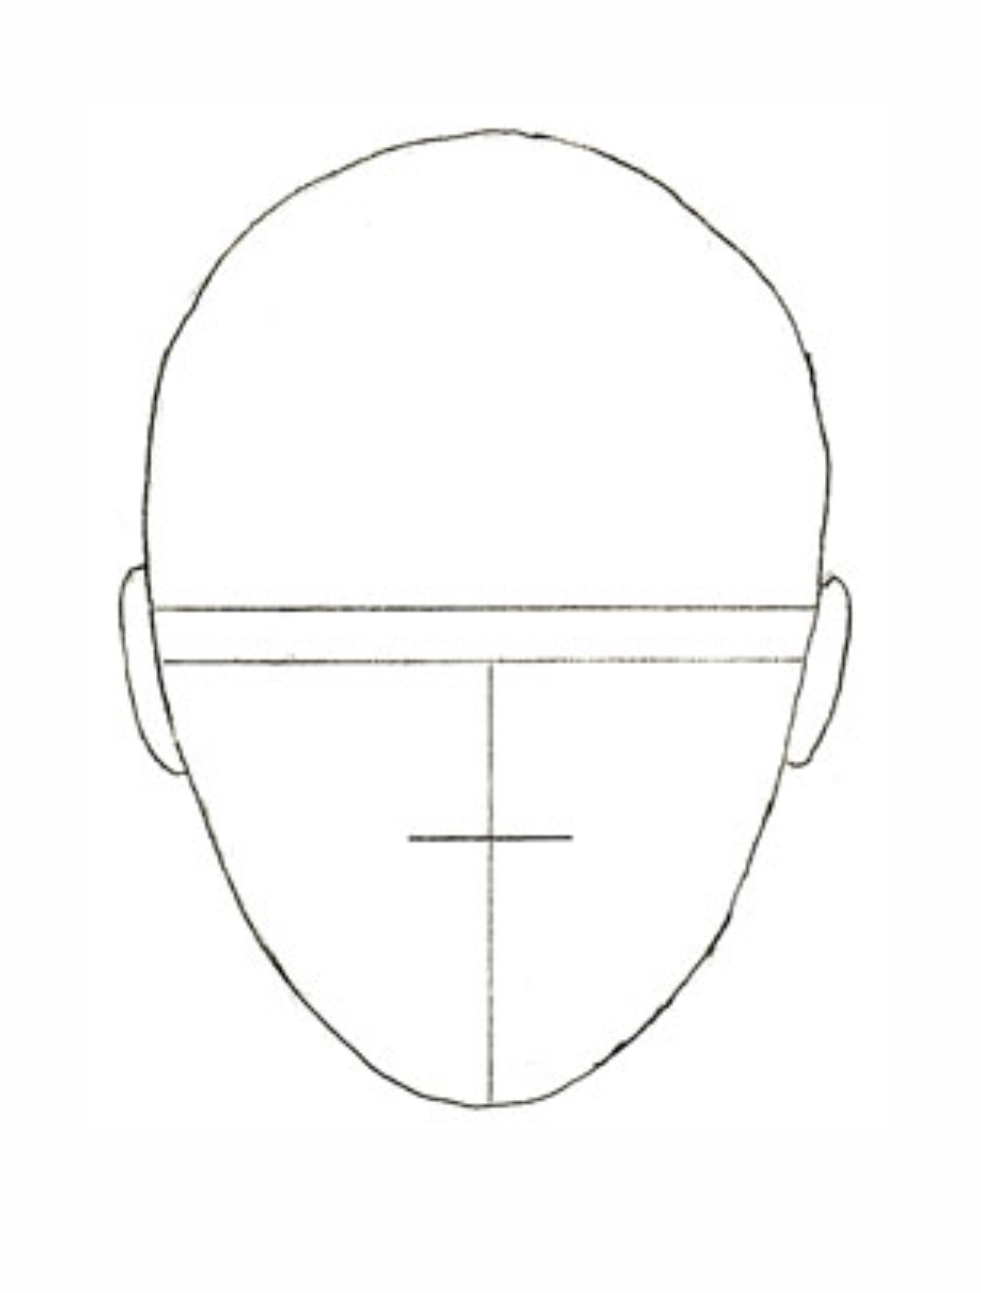 Урок рисования: Как нарисовать лицо человека поэтапно карандашом. 2 этап